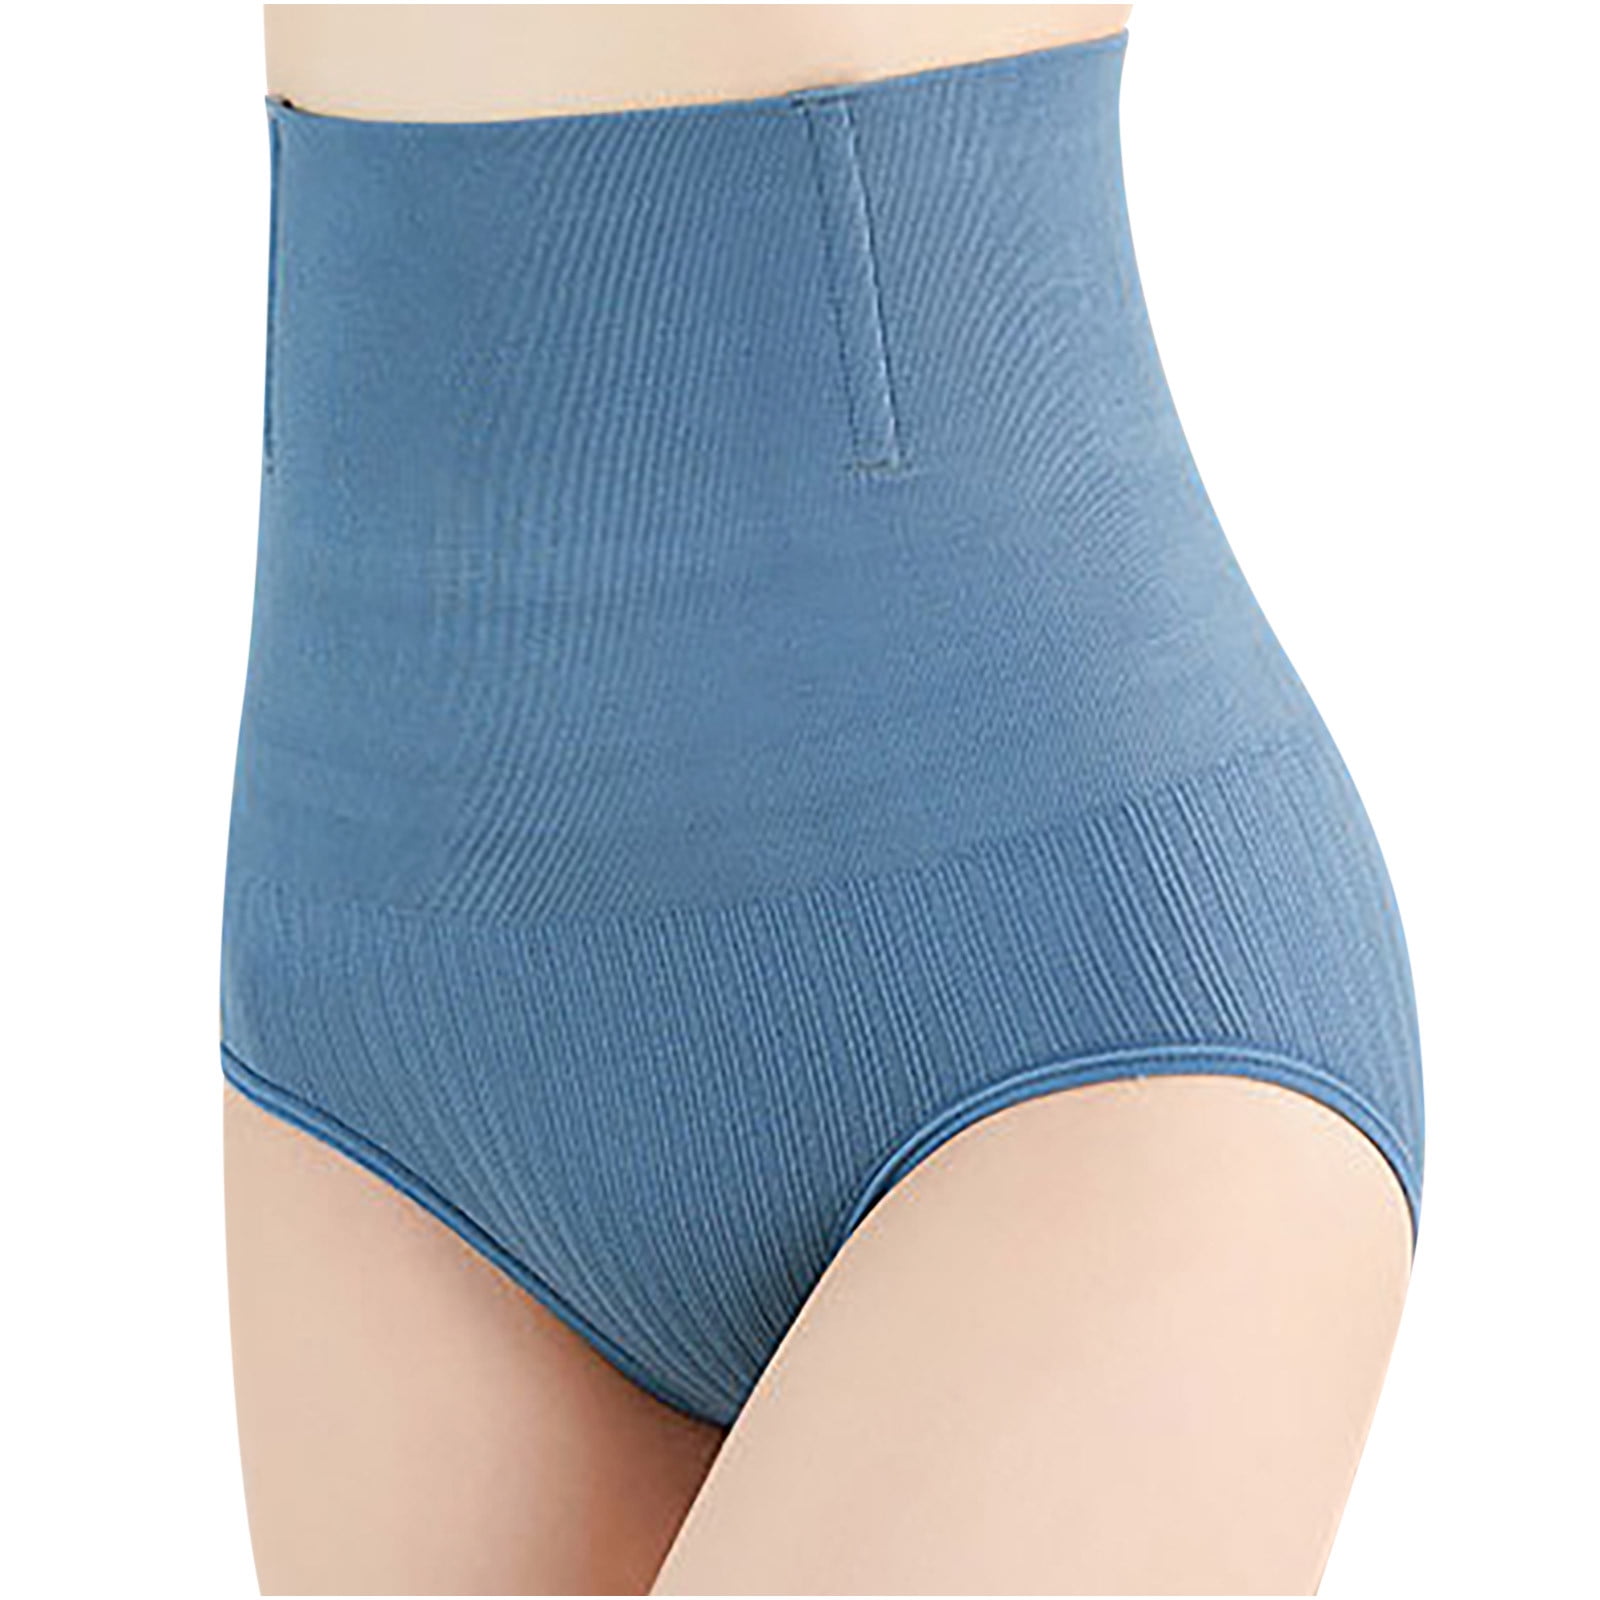 HerrnaliseHigh Waist Panties Tummy Control Women Ladies Underpants